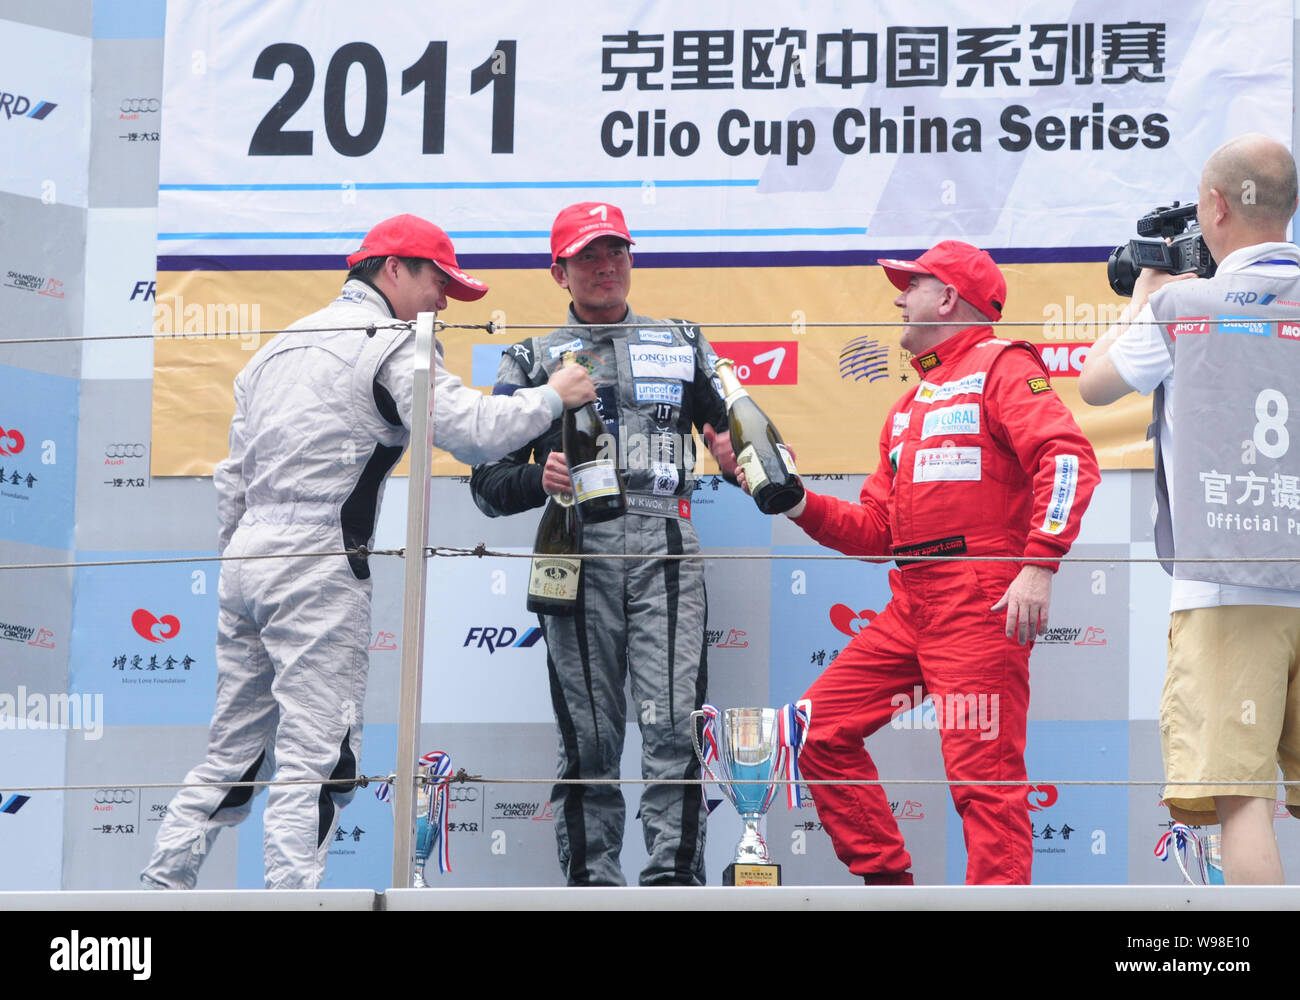 Hong Kong cantante e attore Aaron Kwok (C) celebra la vittoria sul podio durante 2011 Clio Cup serie di Cina a Shanghai in Cina, 21 agosto 2011. Foto Stock